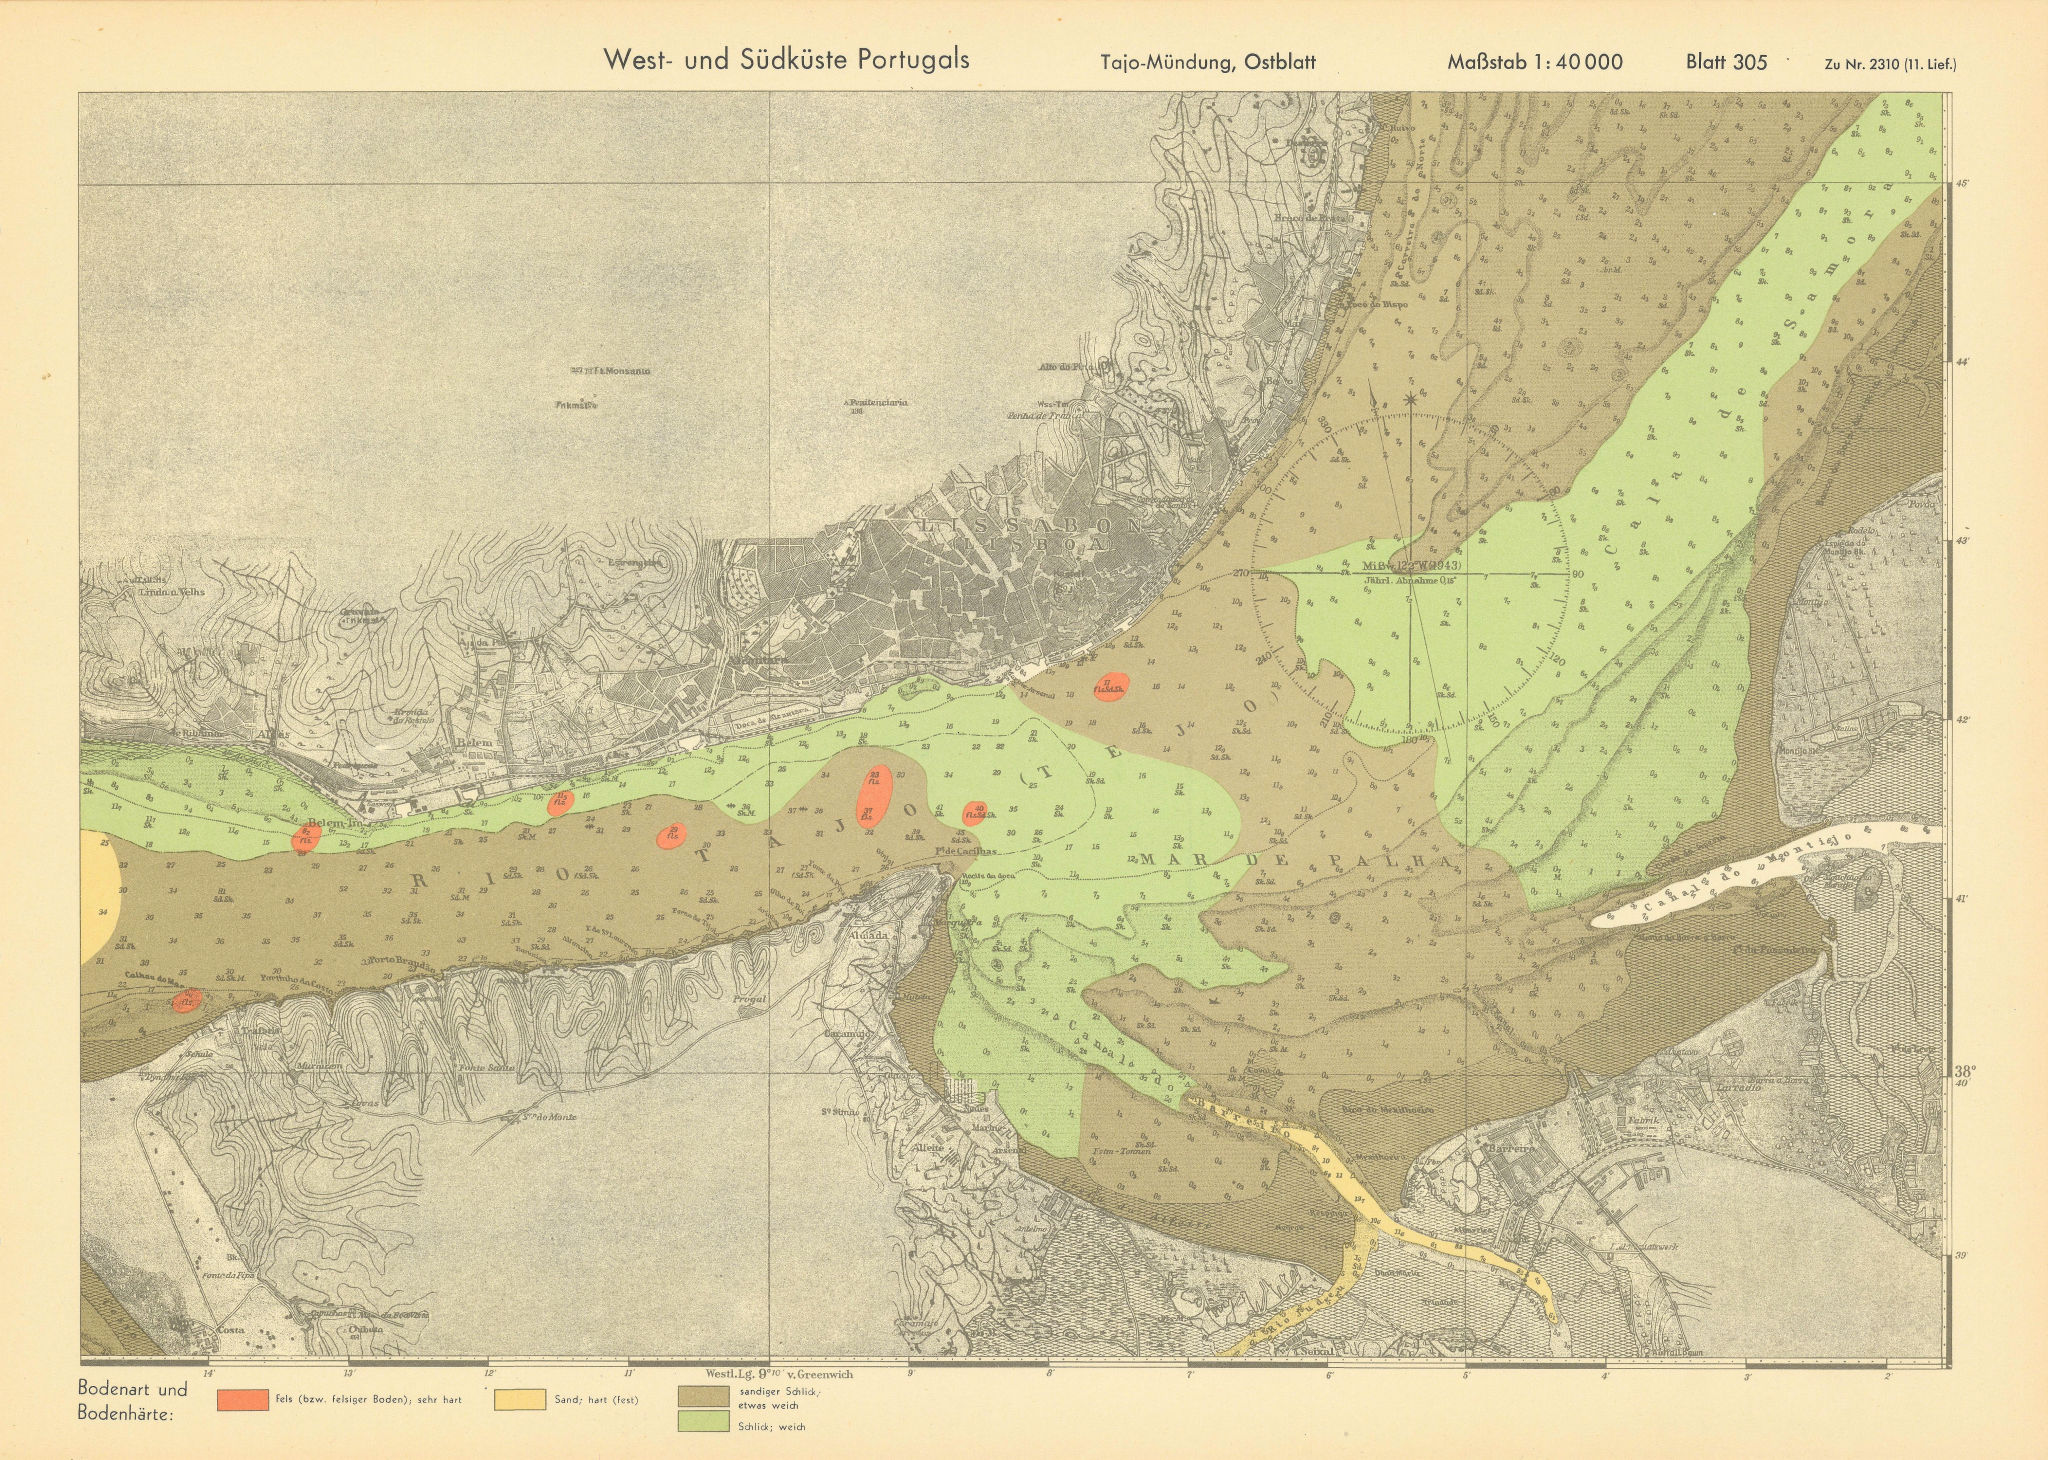 Lisbon. Tagus estuary east. Portugal. KRIEGSMARINE Nazi map 1943 old